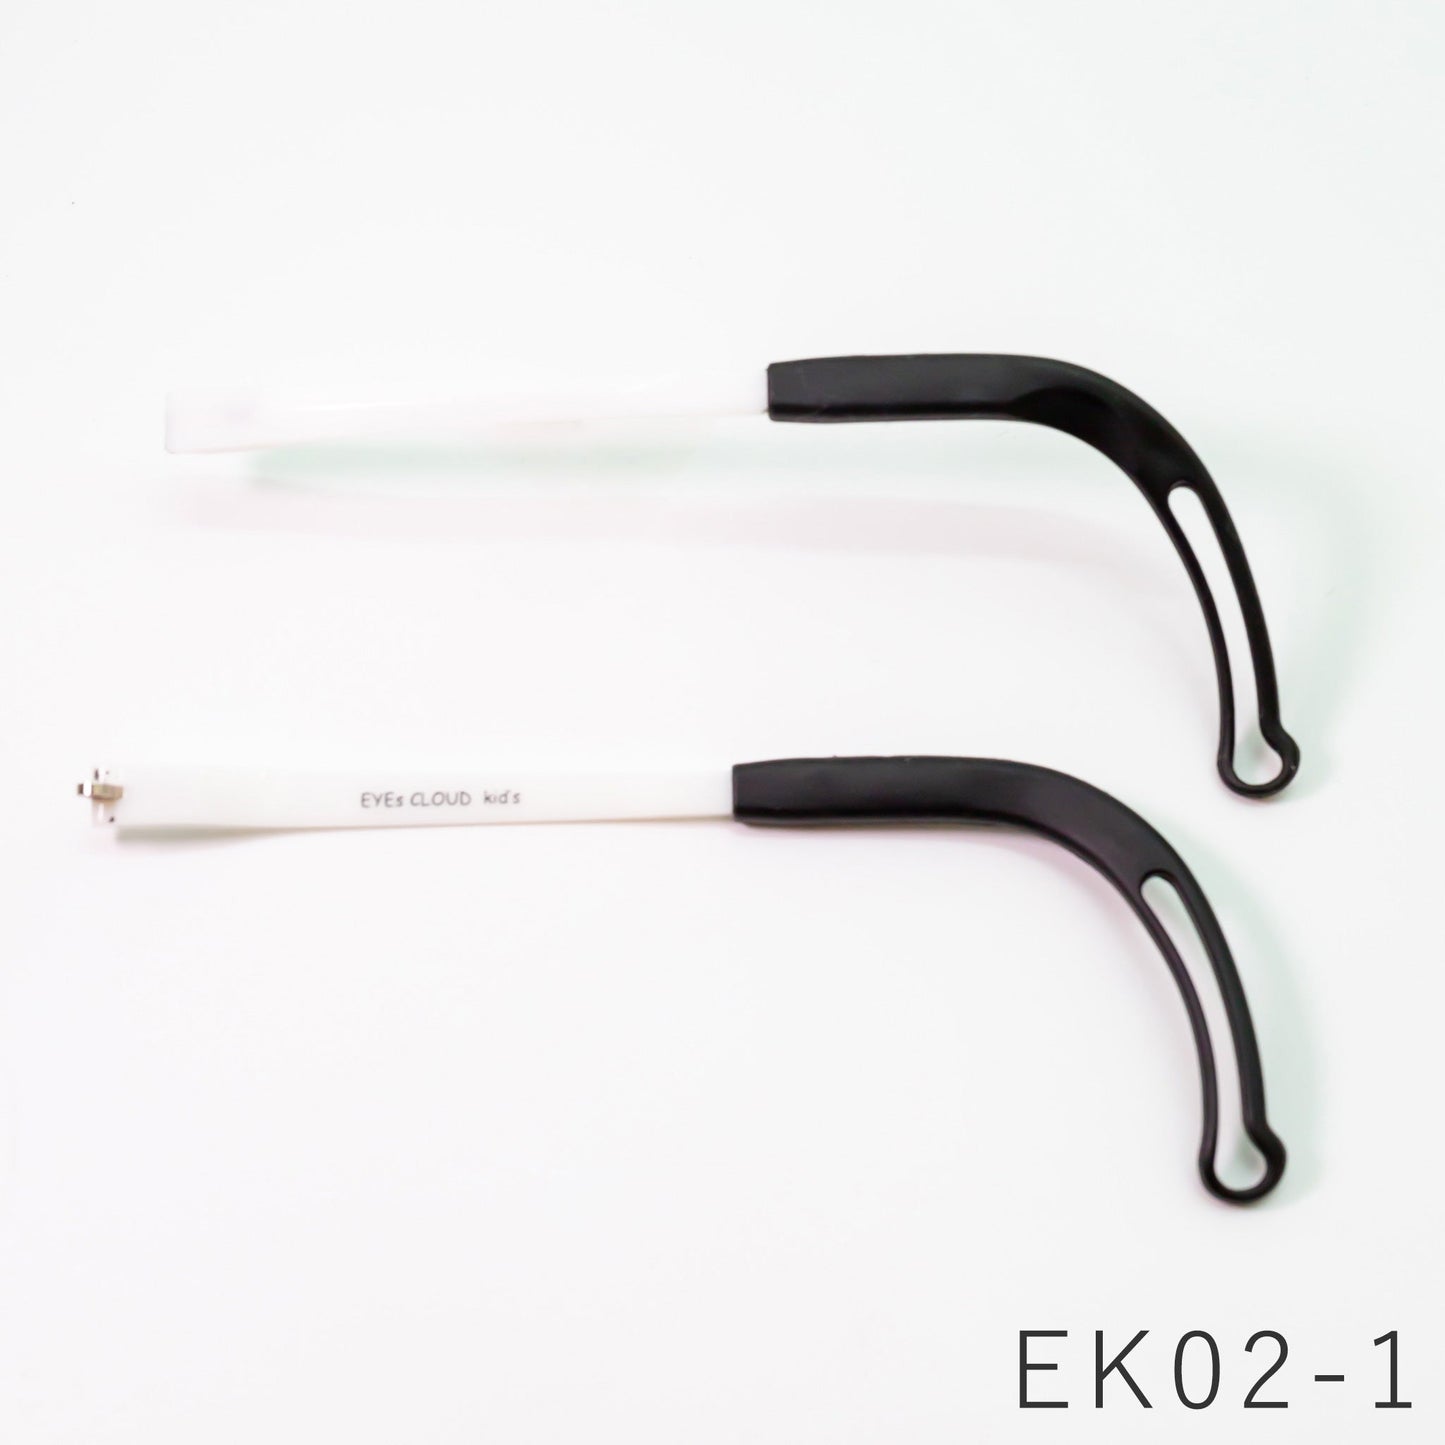 【交換・修理】EYEs CLOUD - アイクラウド - メガネ EK02-1 左右両テンプル